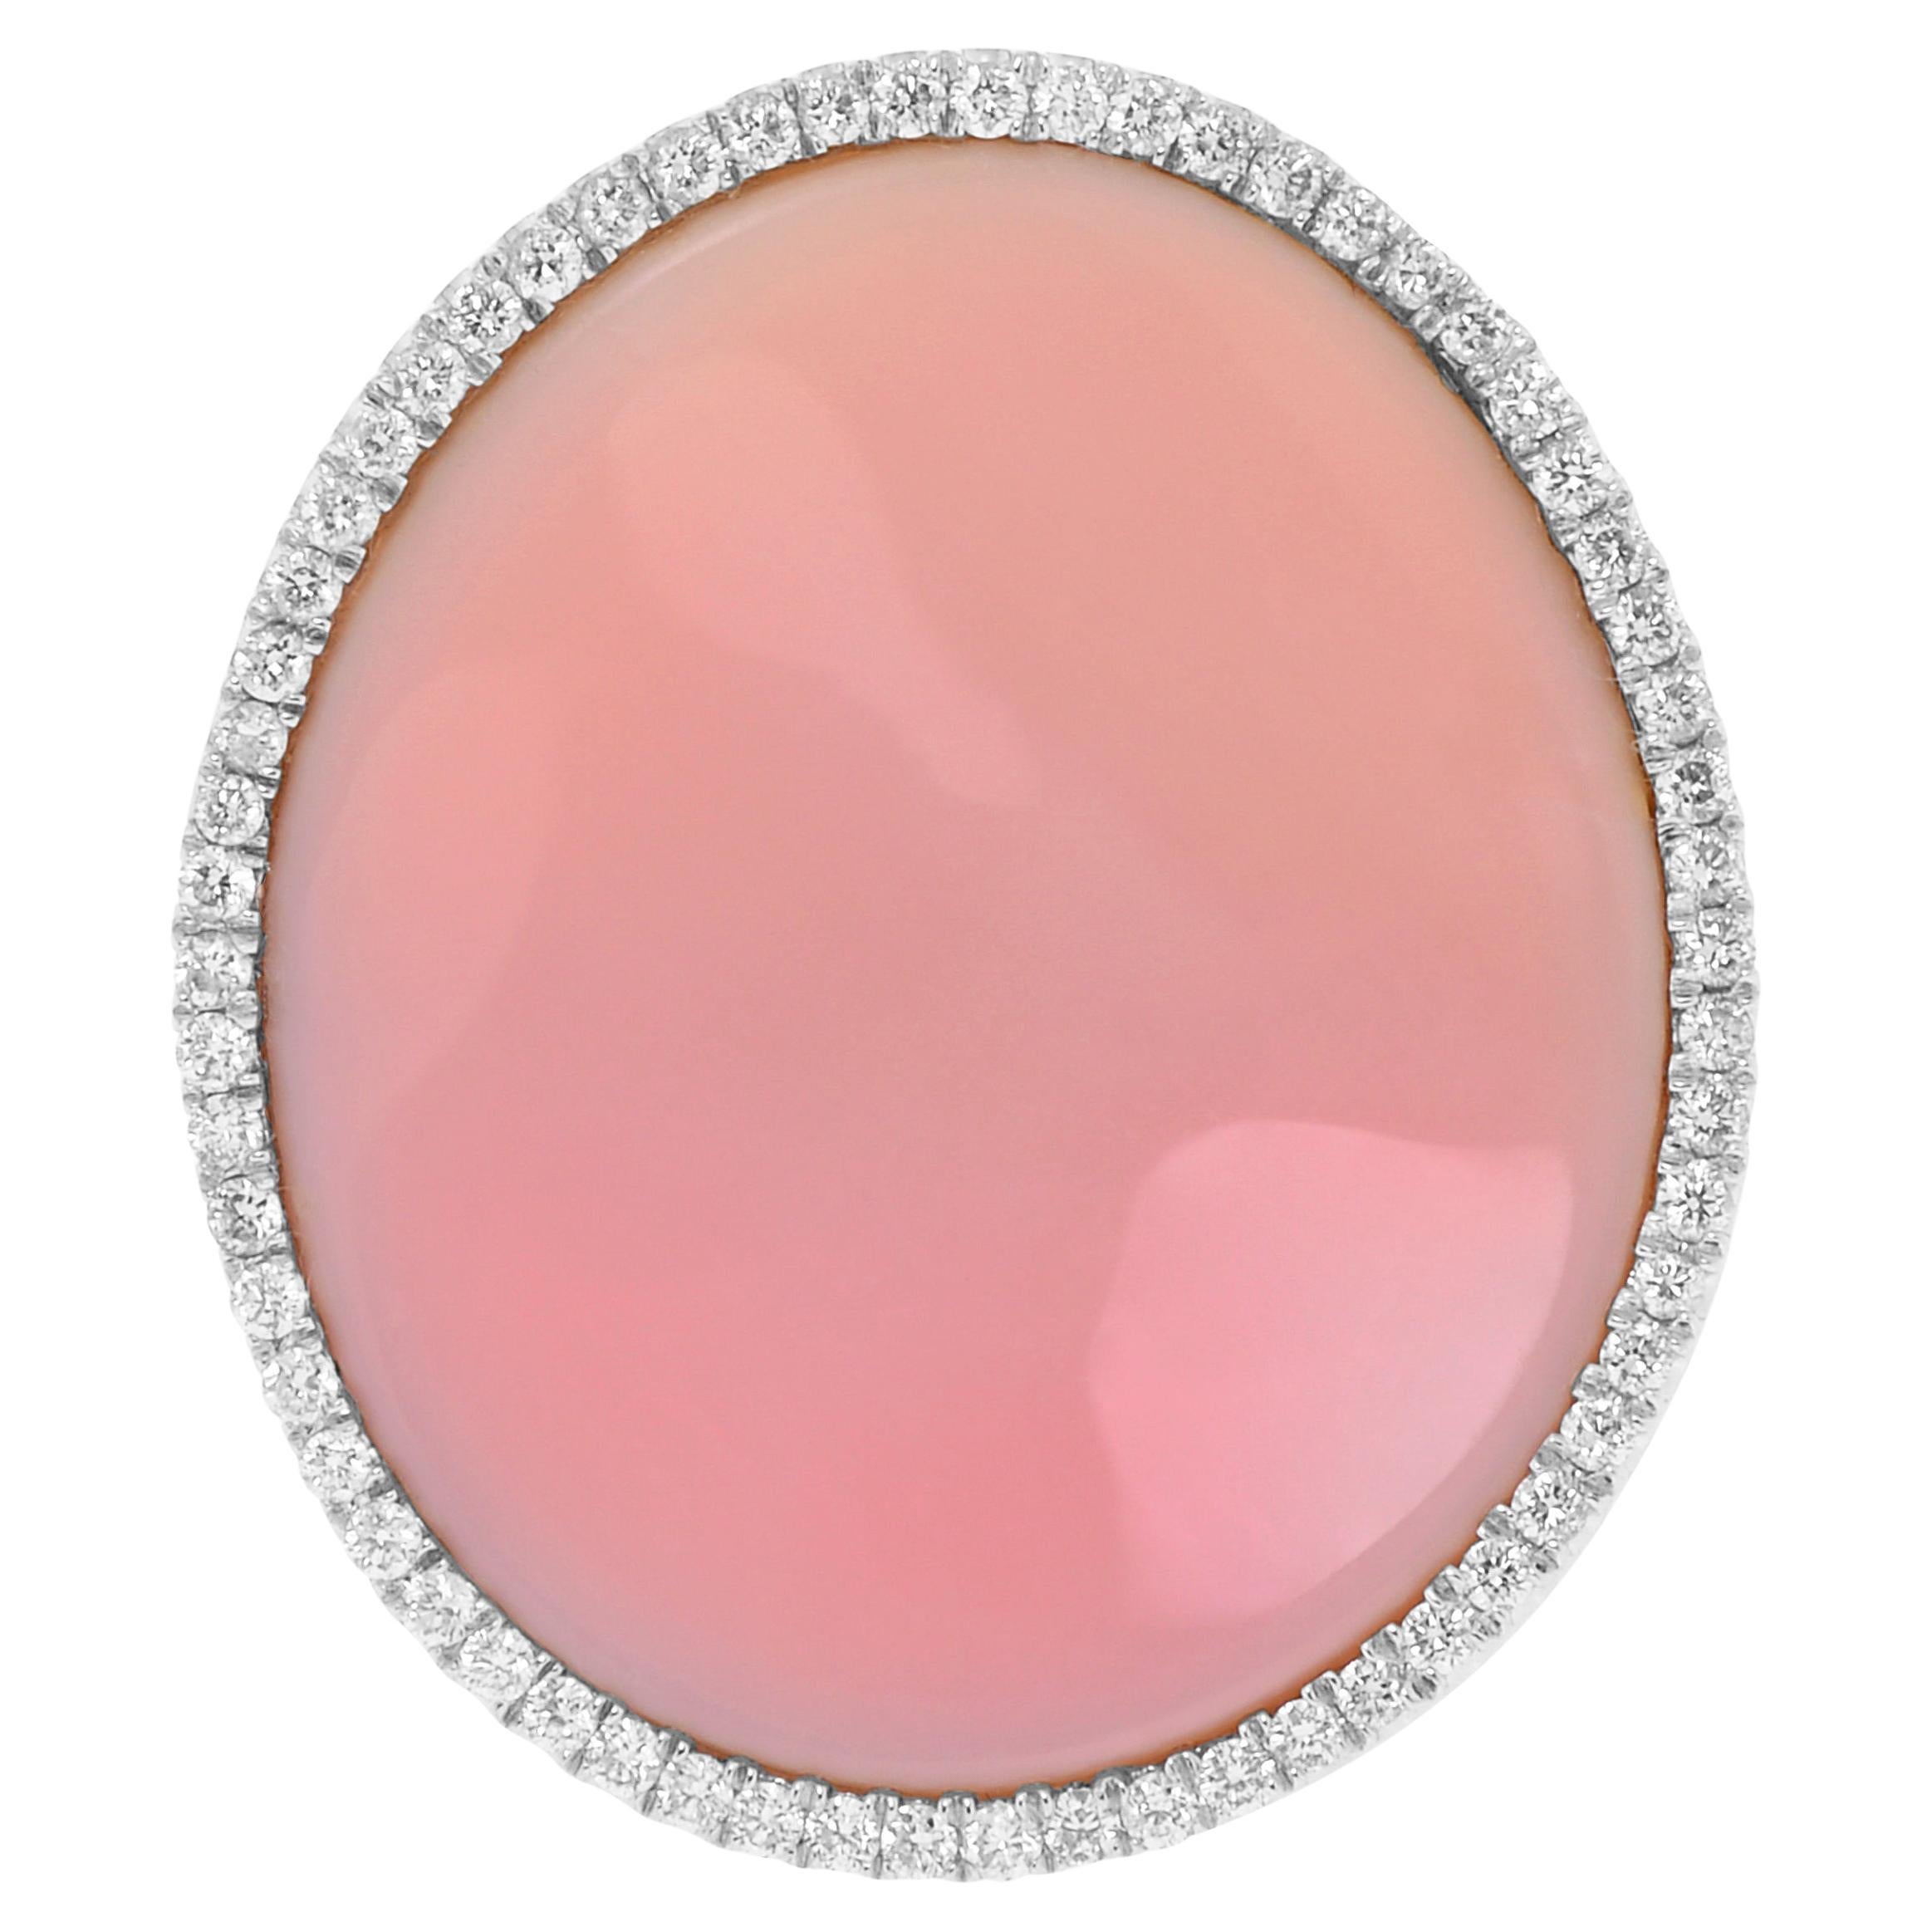 Mimi Milano Aurora 18K White Gold, Mother of Pearl & Diamond Statement Ring sz 6